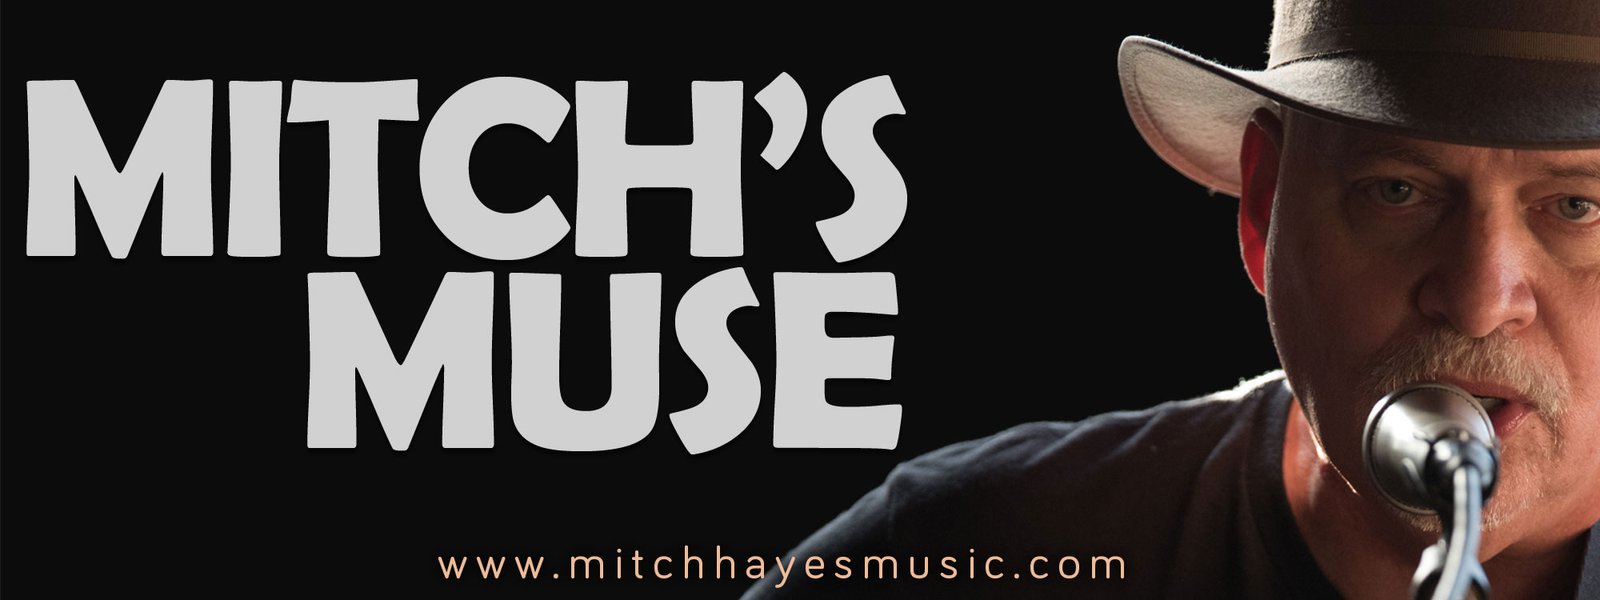 Mitch’s Muse – January 2019